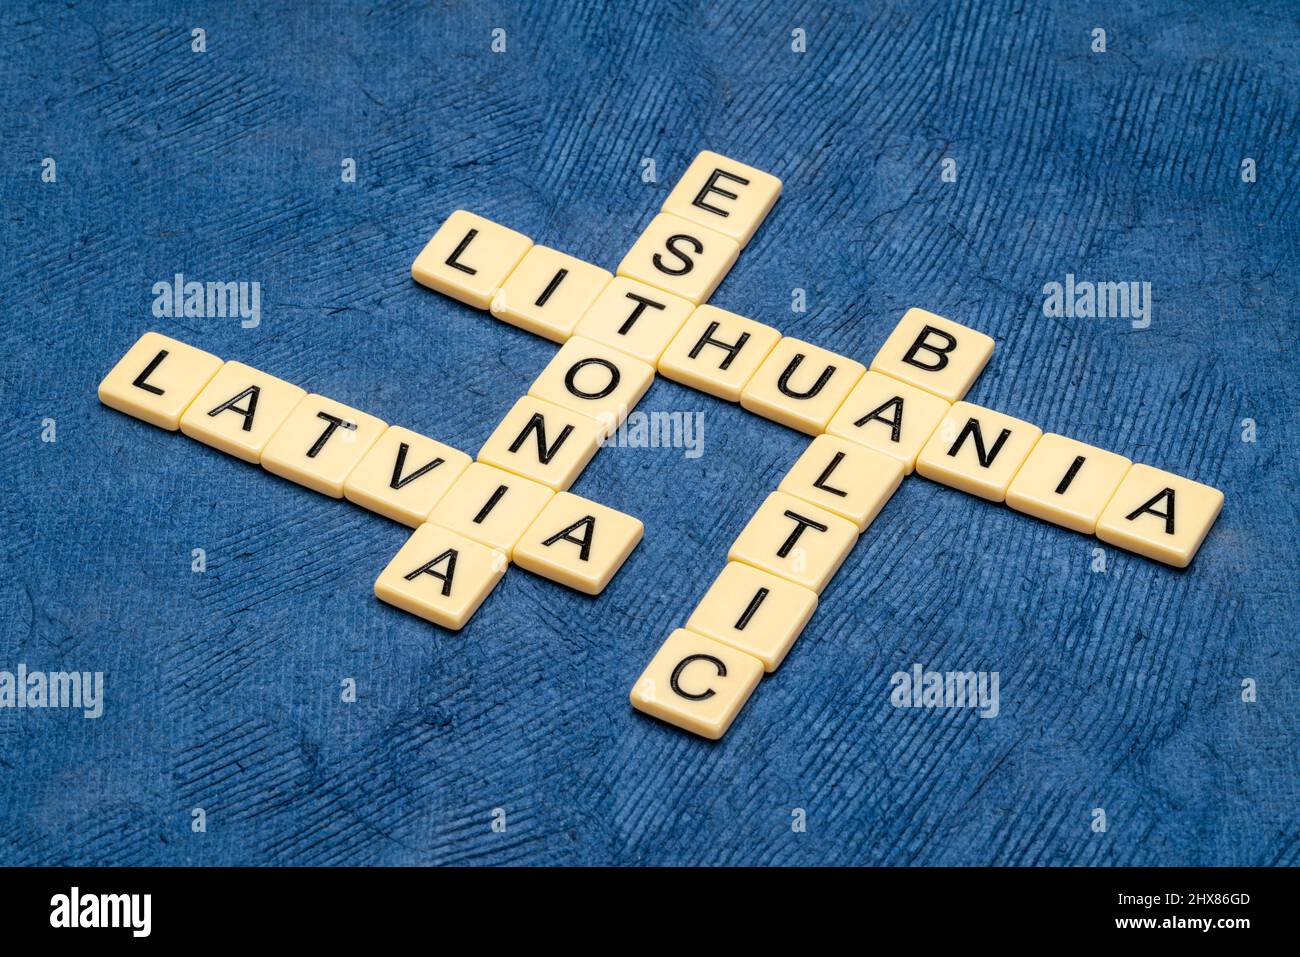 Baltikum, Lettland, Estland und Litauen, Kreuzworträtsel in Elfenbein Buchstaben Fliesen gegen strukturierte handgemachte Papier Stockfoto